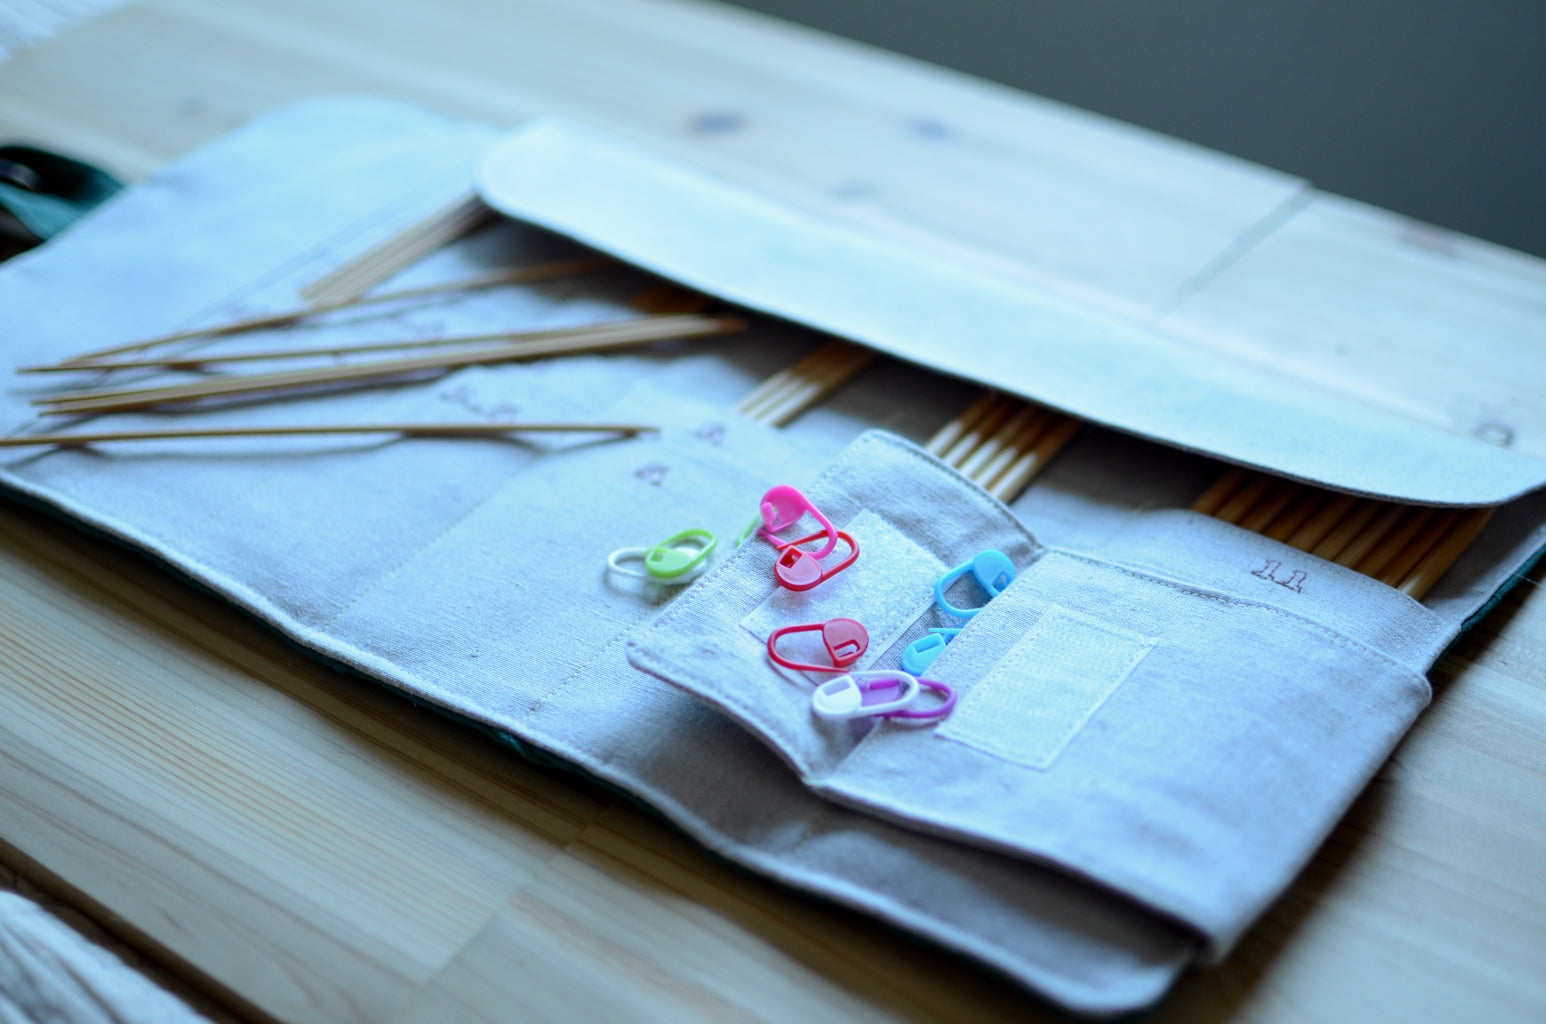 DPN Knitting Needle Organizer by Atelier de Soyun, Heirloom…